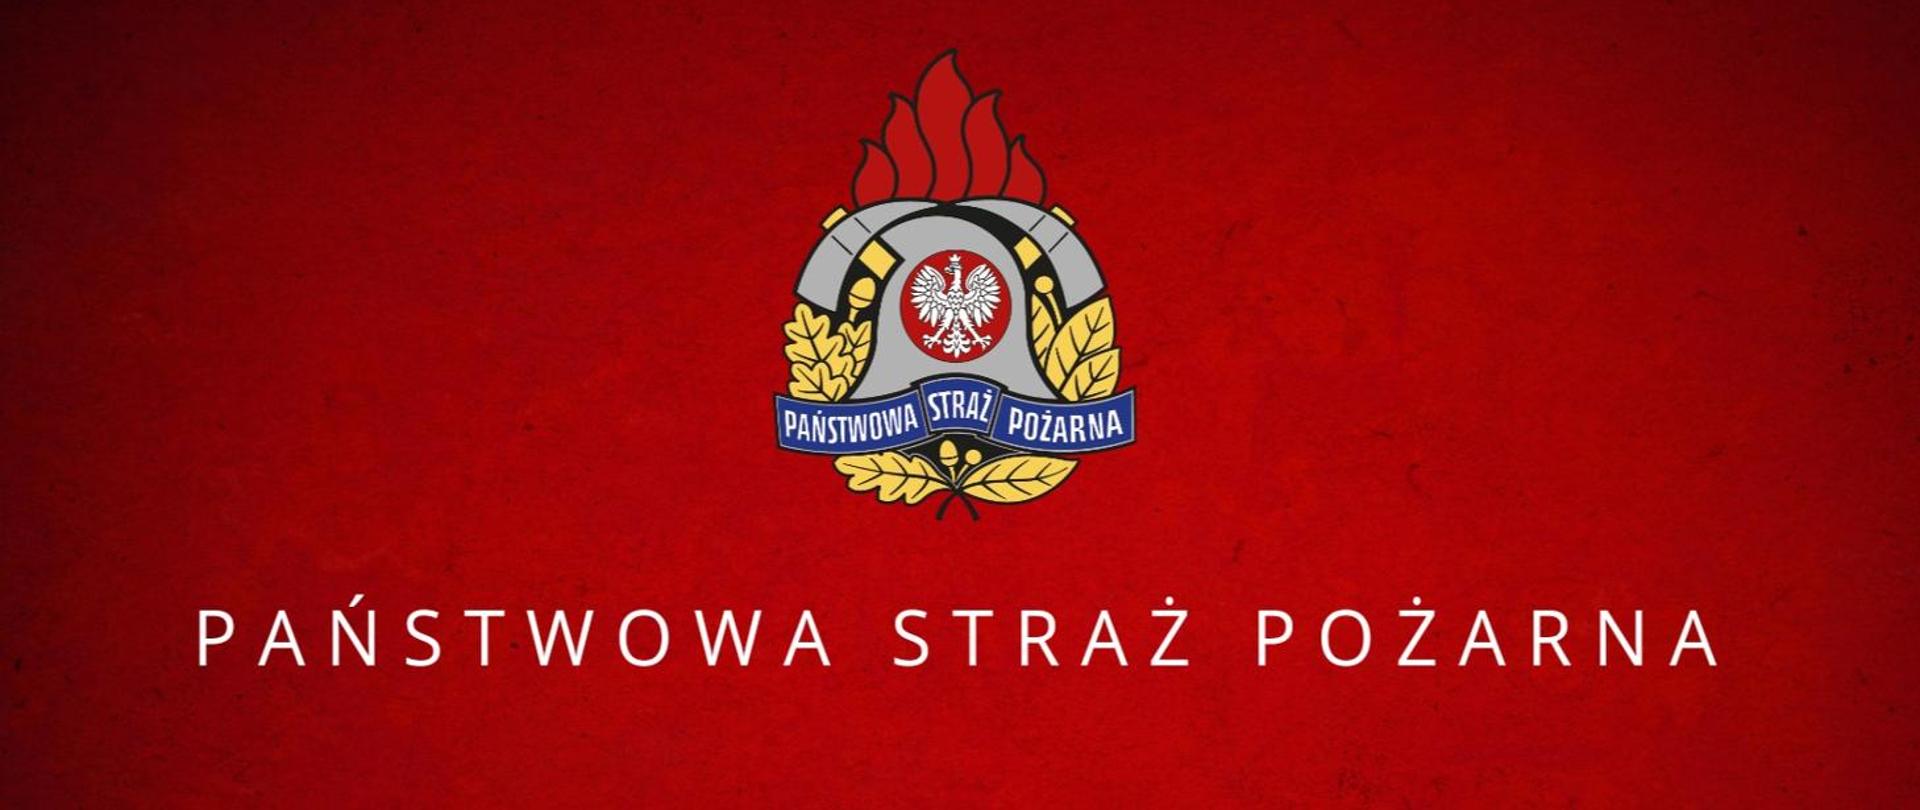 Logo Państwowej Straży Pożarnej na czerwonym tle z podpisem PAŃSTWOWA STRAŻ POŻARNA